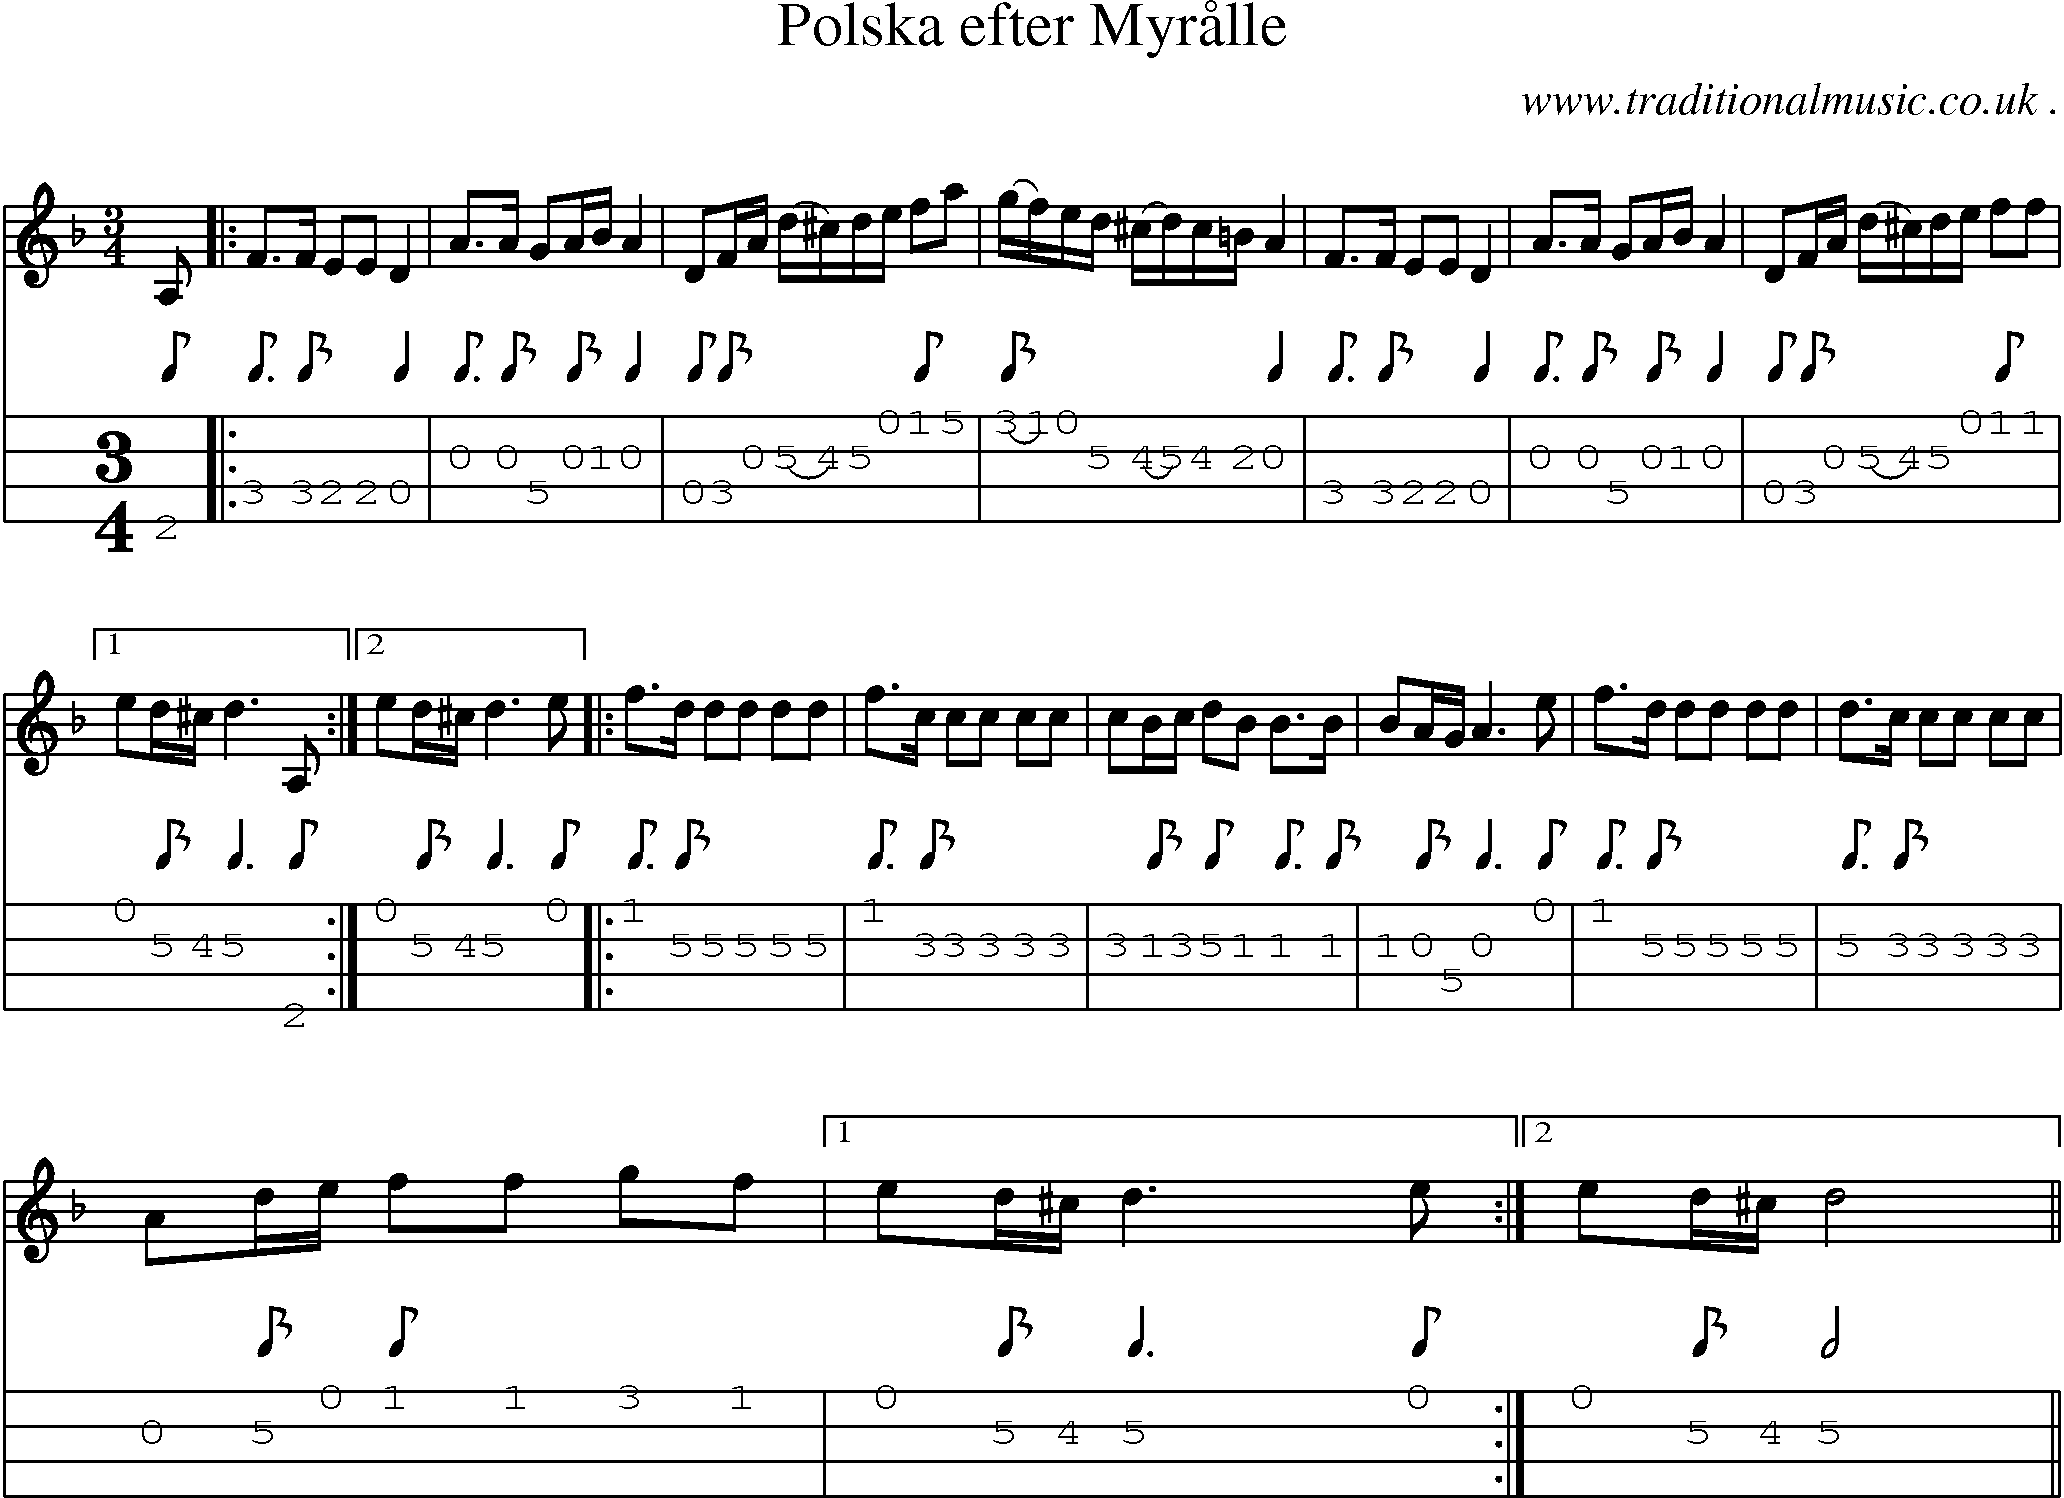 Sheet-Music and Mandolin Tabs for Polska Efter Myraalle